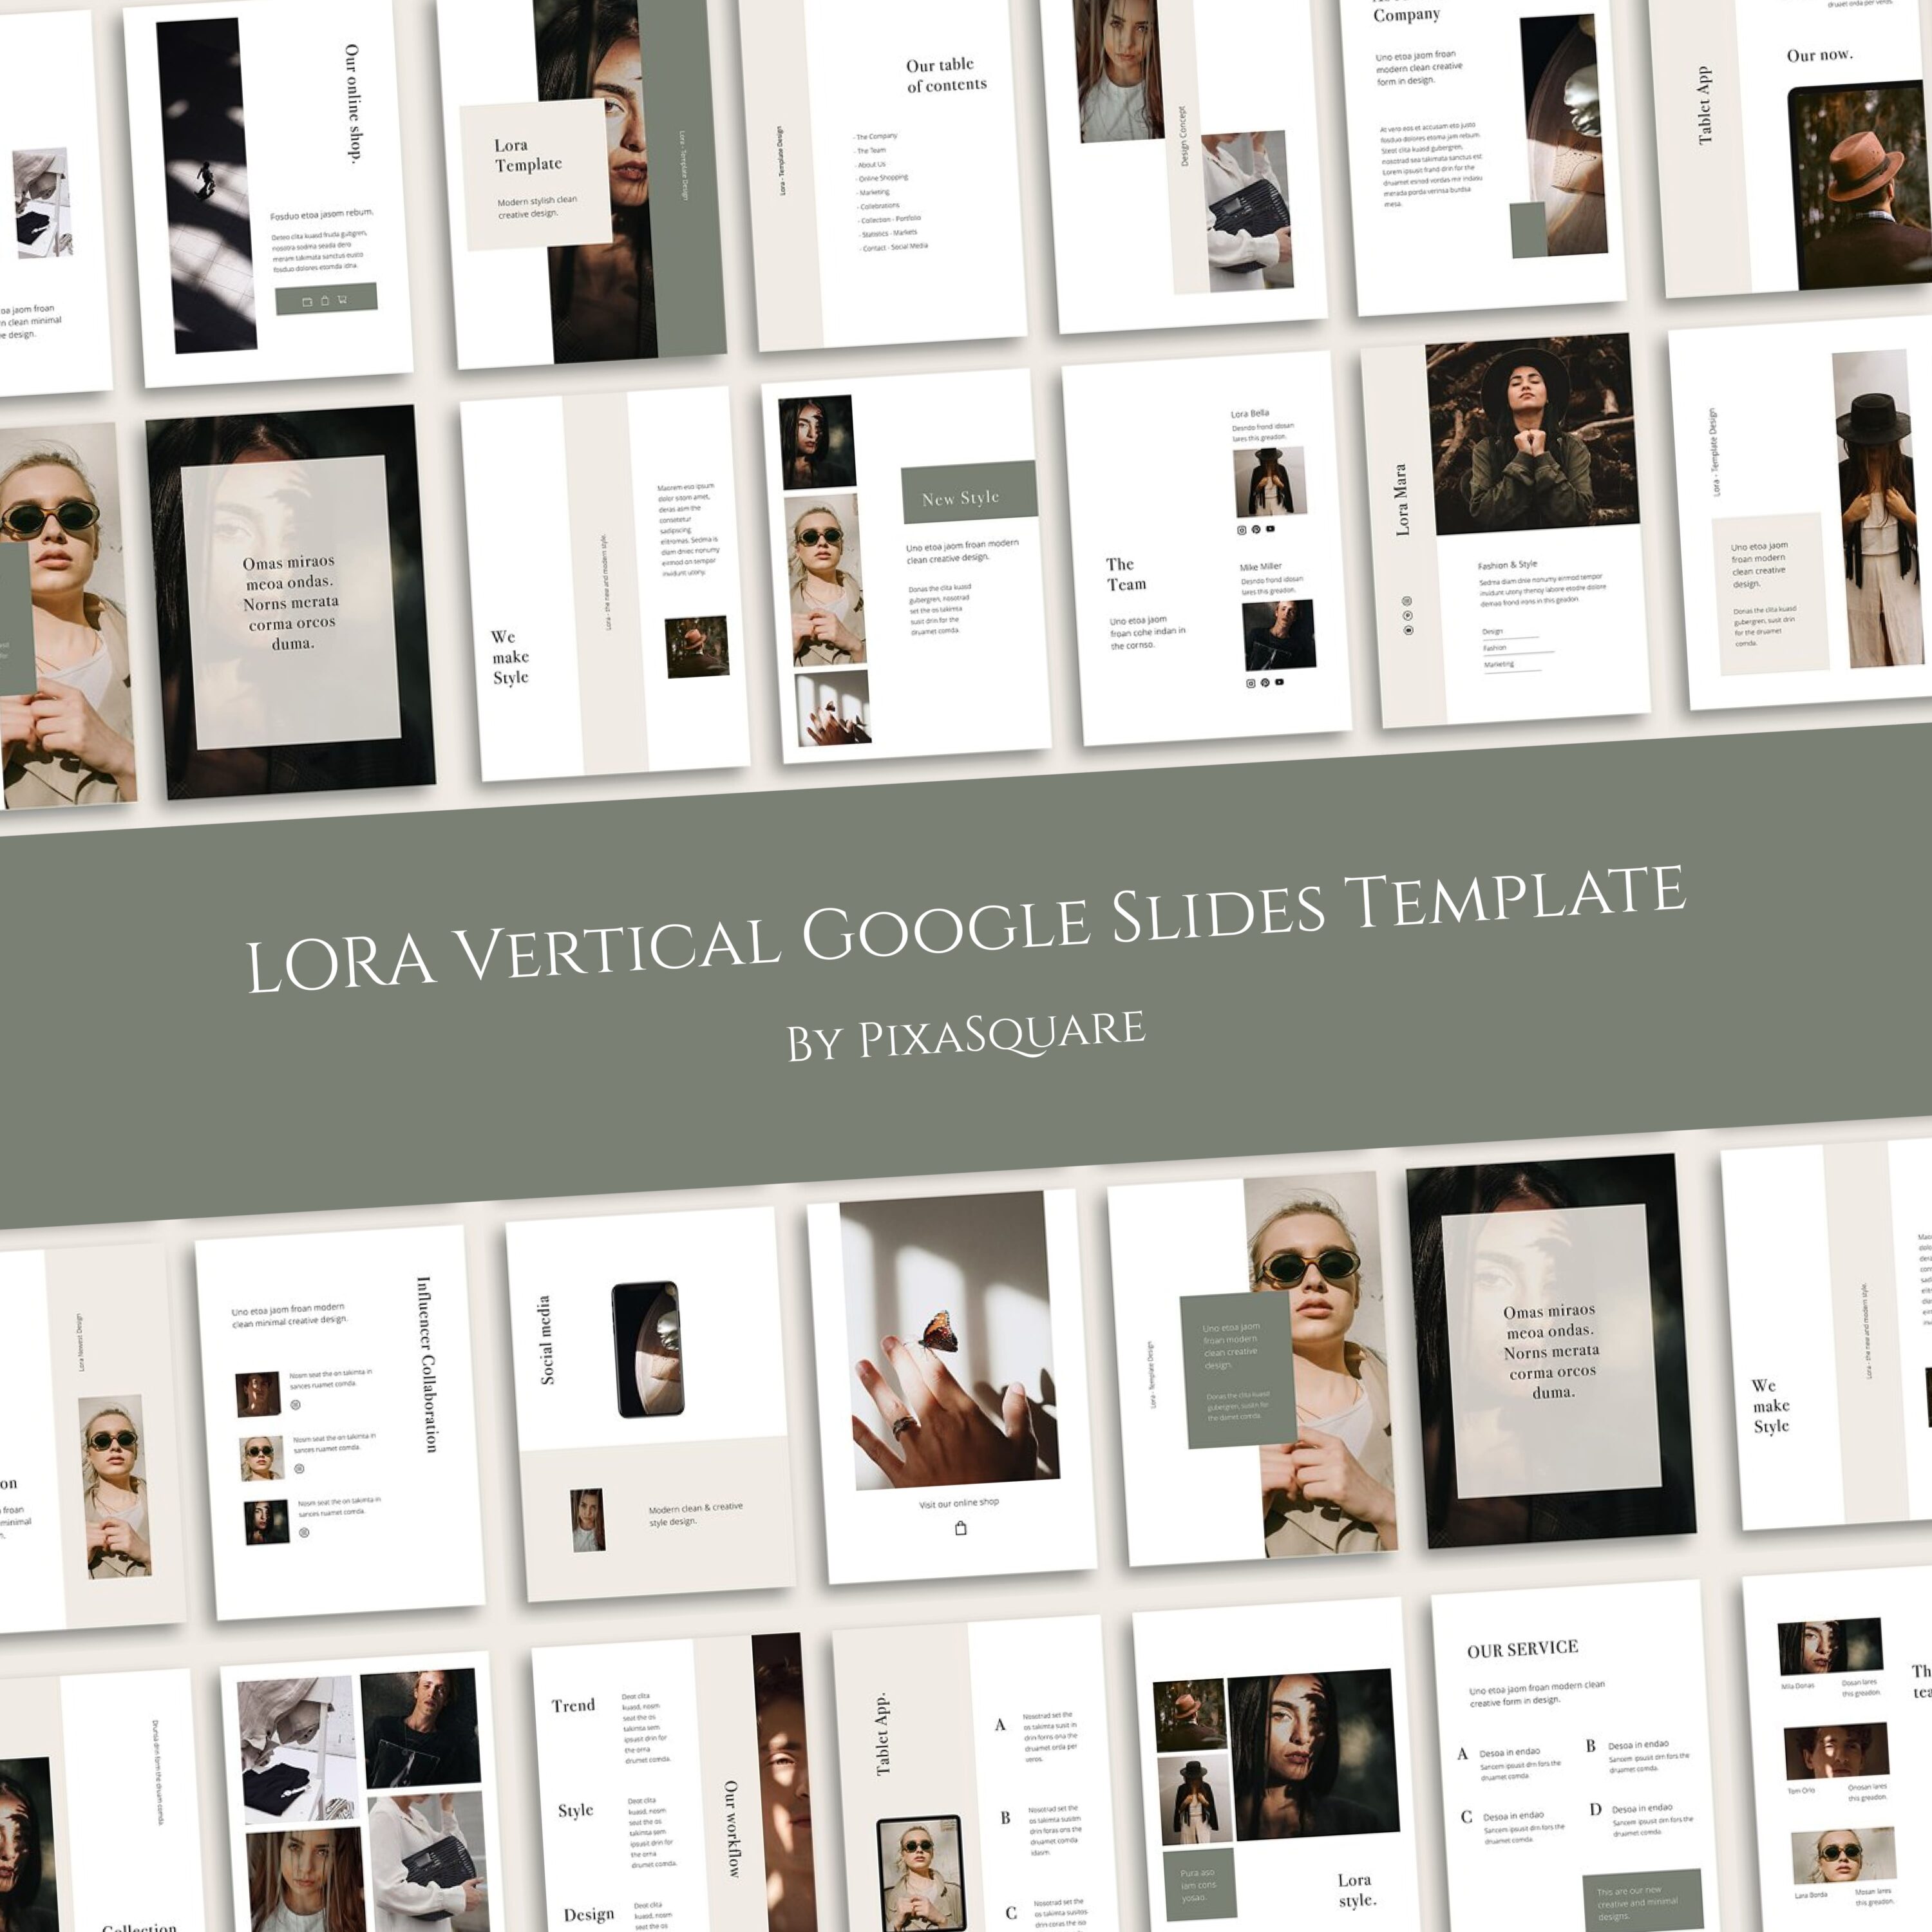 LORA - Google Slides Template – MasterBundles